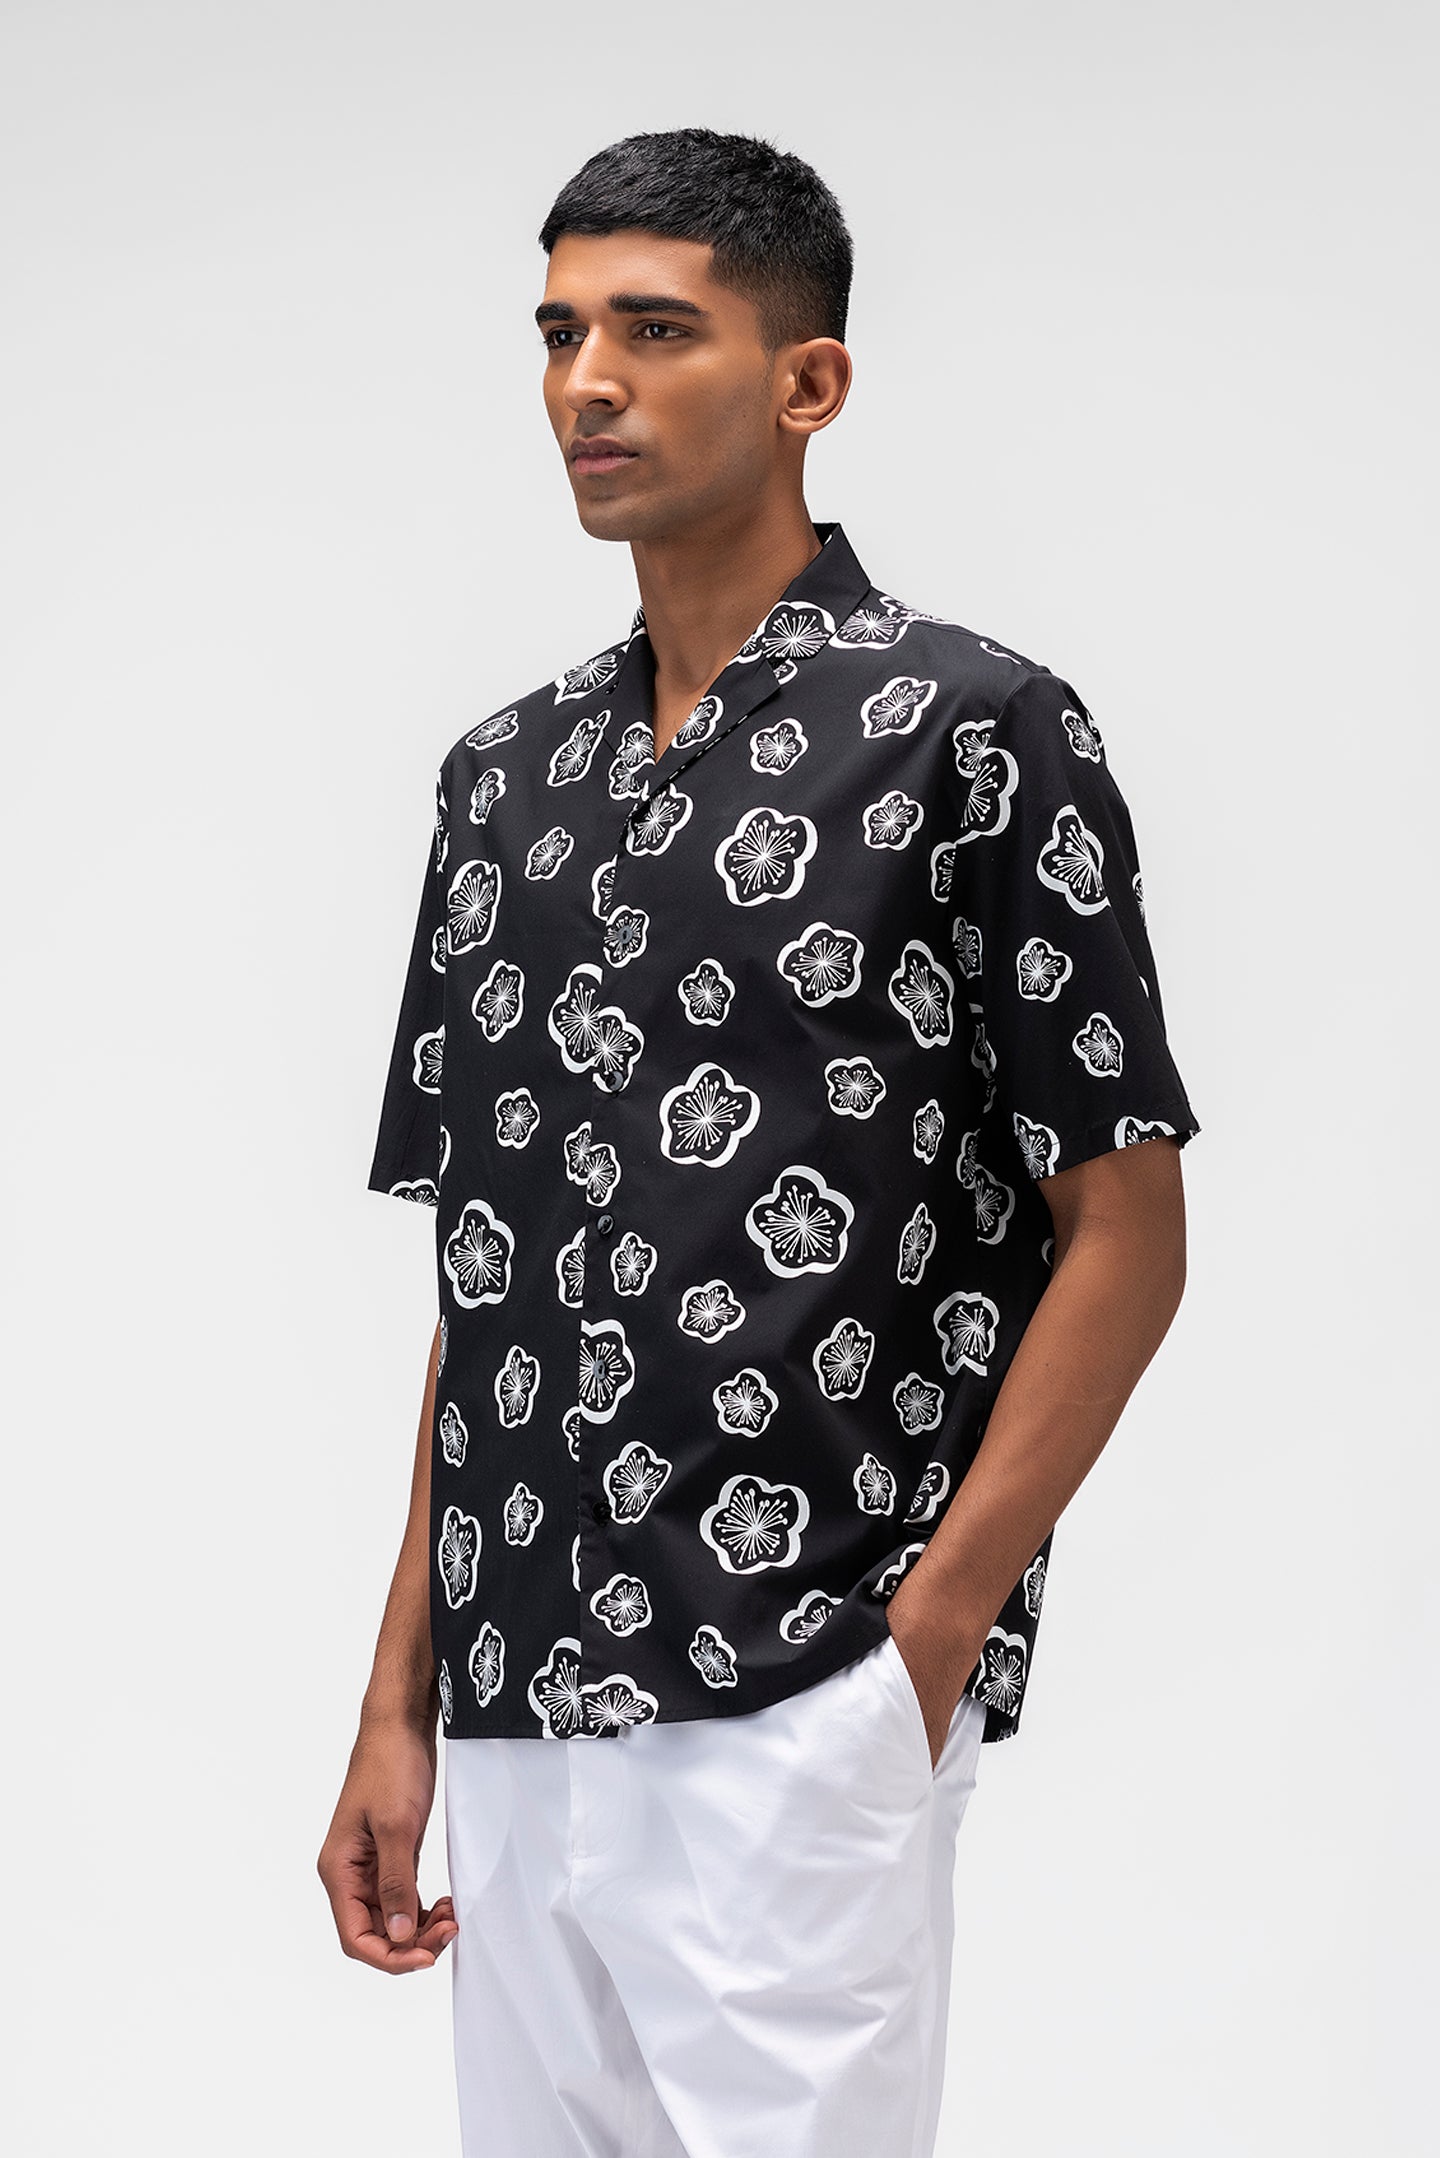 3D Printed Mens Shirt With Cuban Collar